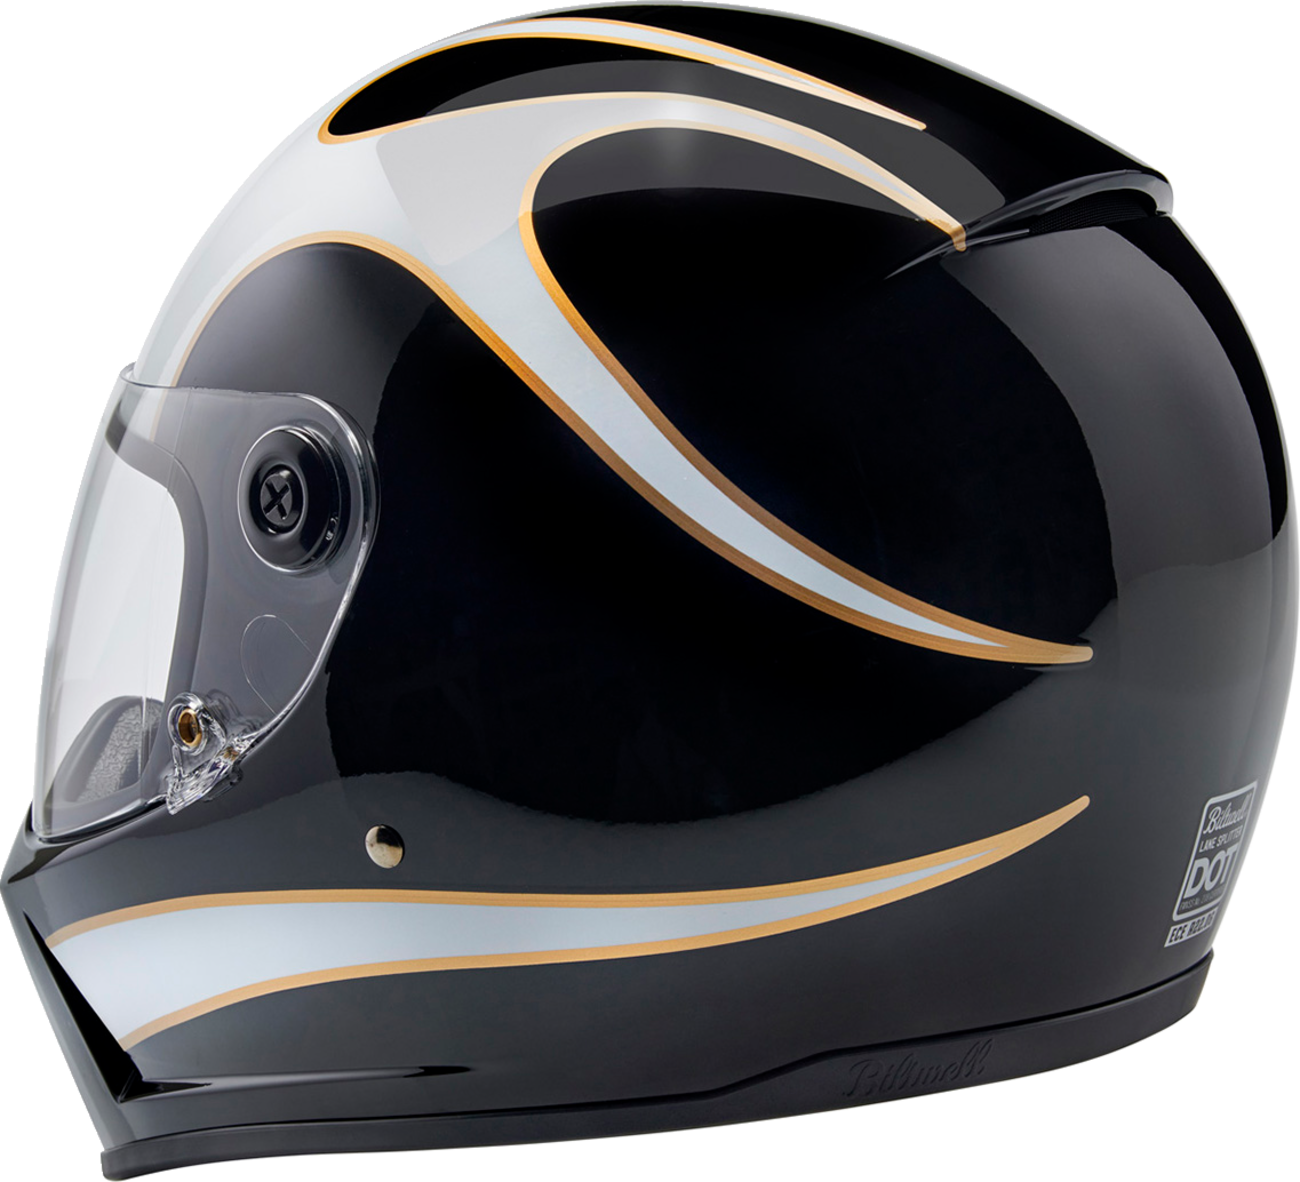 BILTWELL Lane Splitter Helmet - Gloss Black/White Flames - Small 1004-570-502